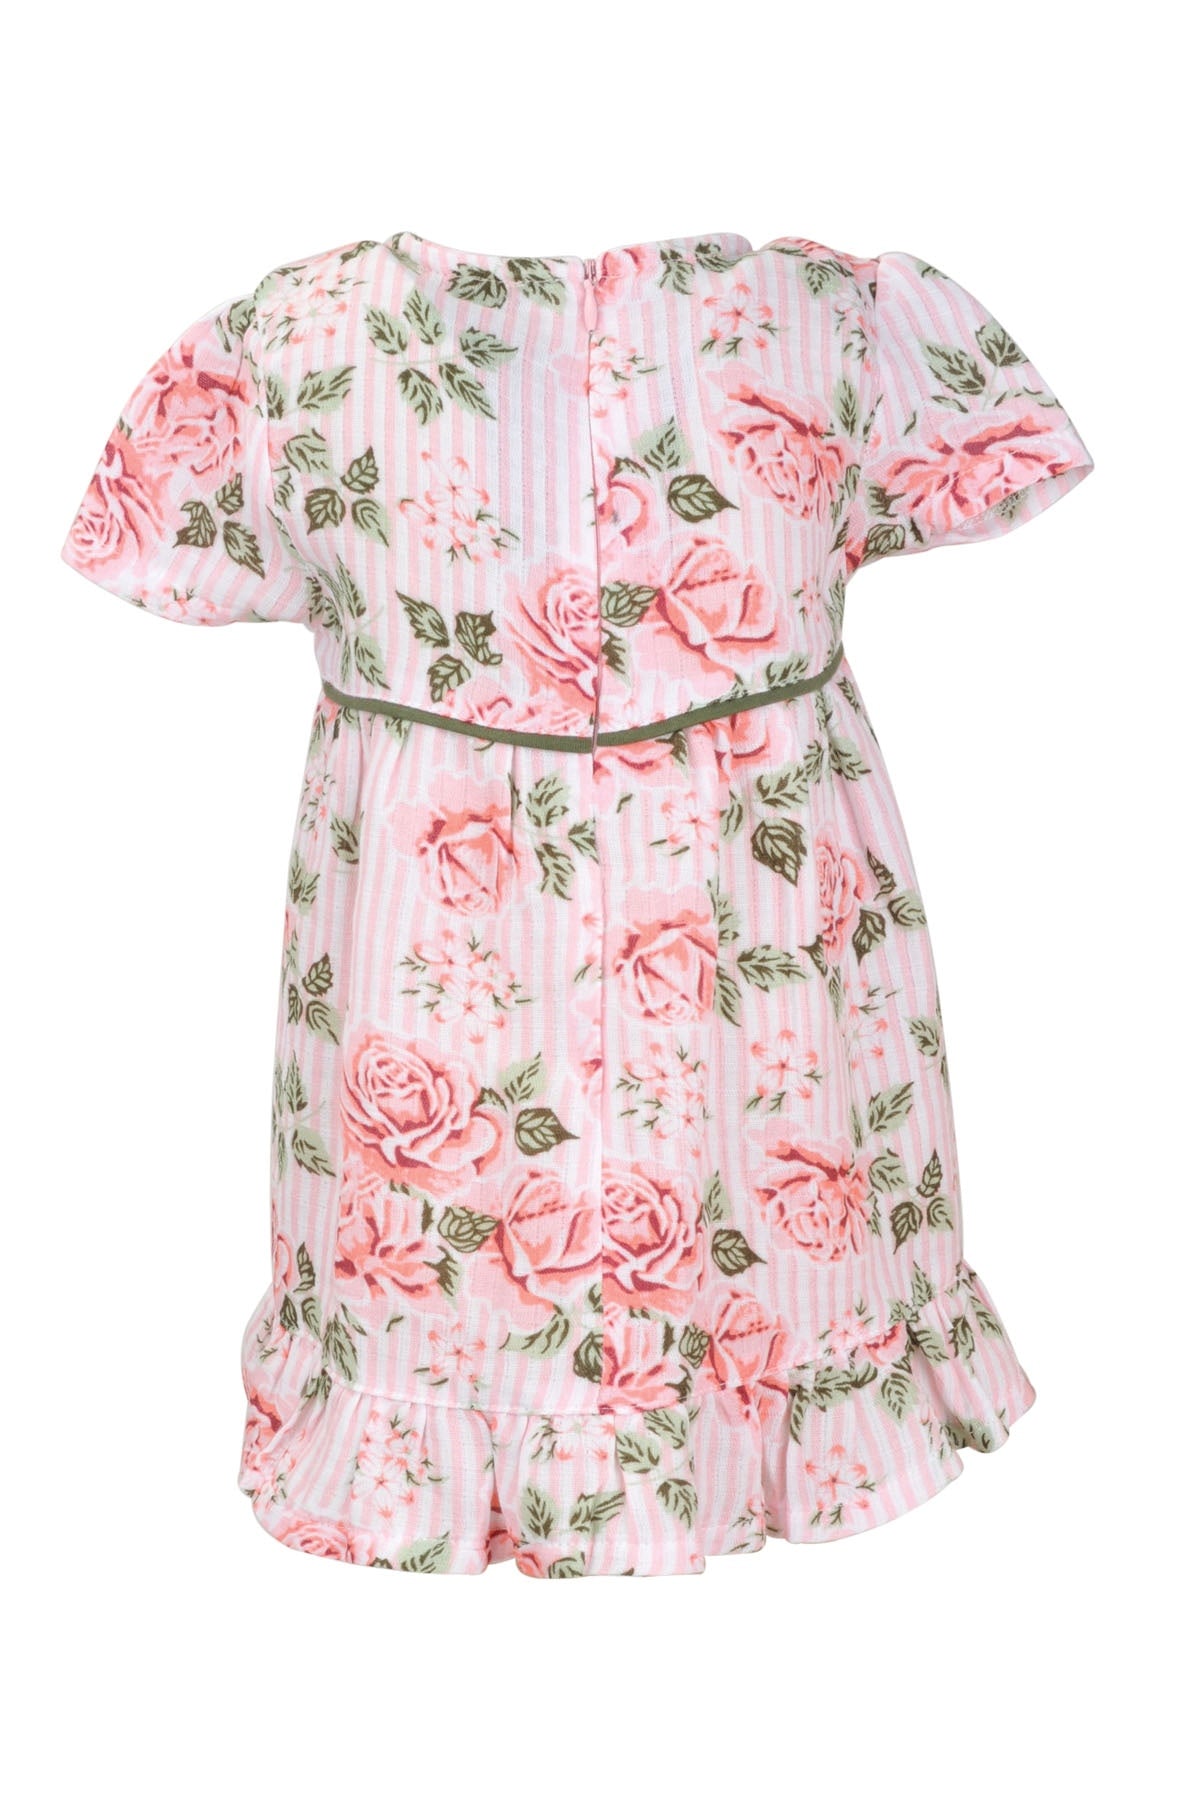 Kız Bebek Gül Roses Elbise (9ay-4yaş)-3